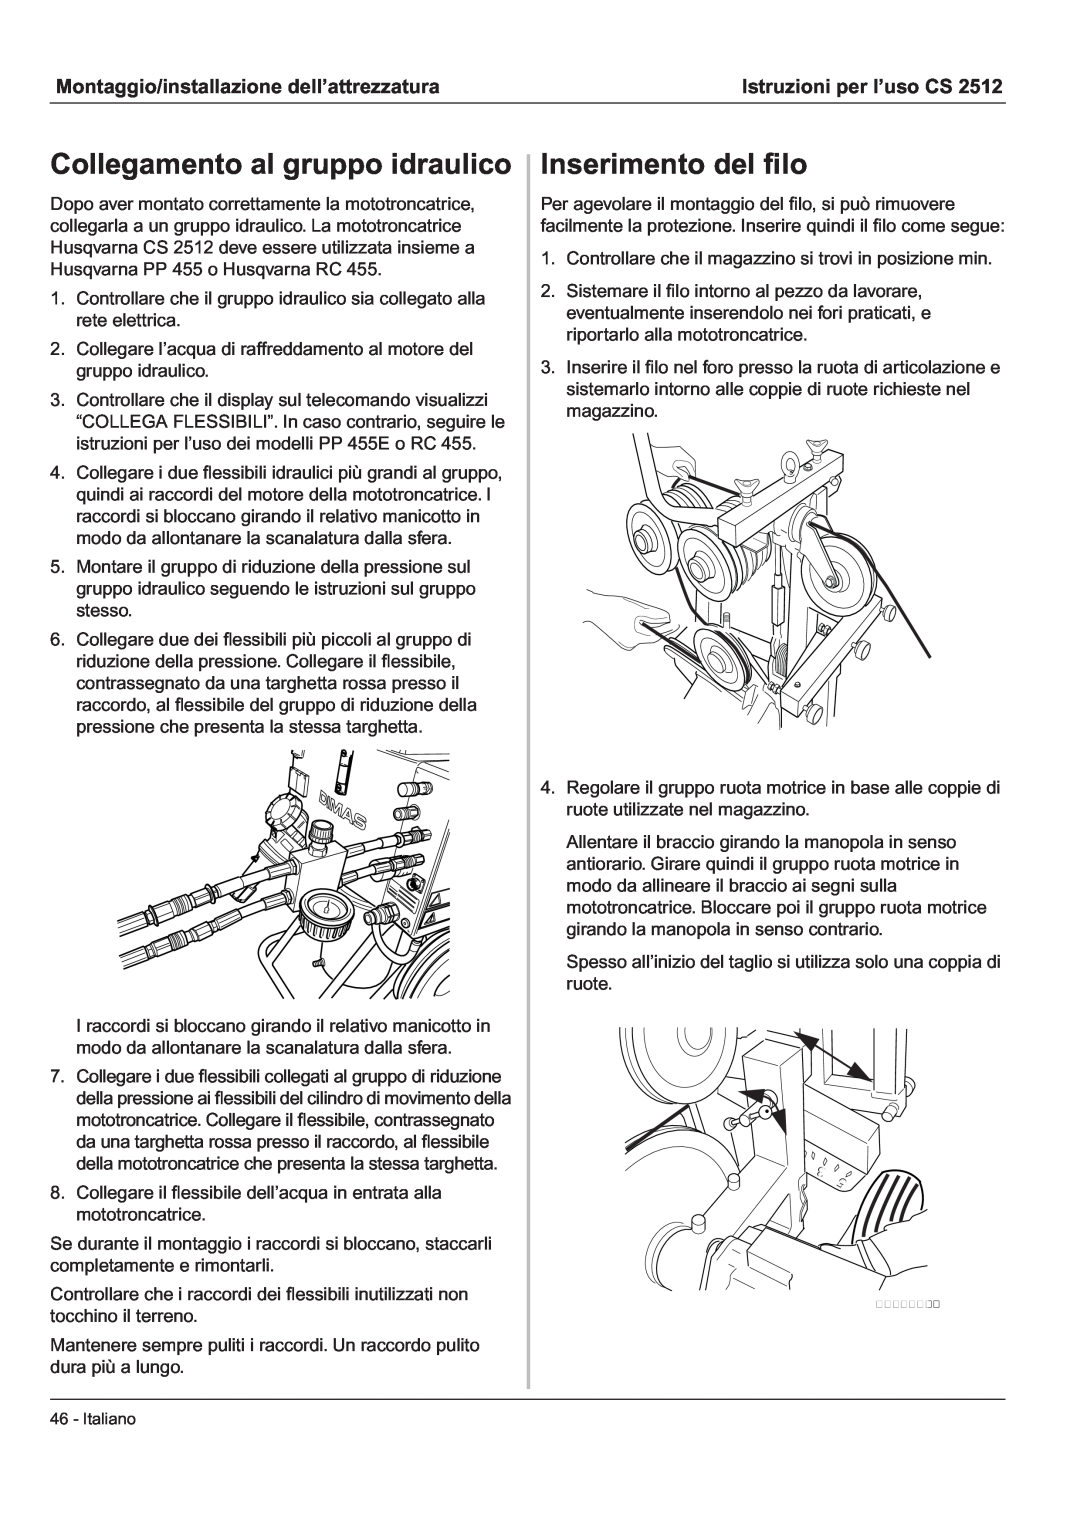 Husqvarna CS 2512 manual Collegamento al gruppo idraulico, Inserimento del ﬁlo, Montaggio/installazione dell’attrezzatura 